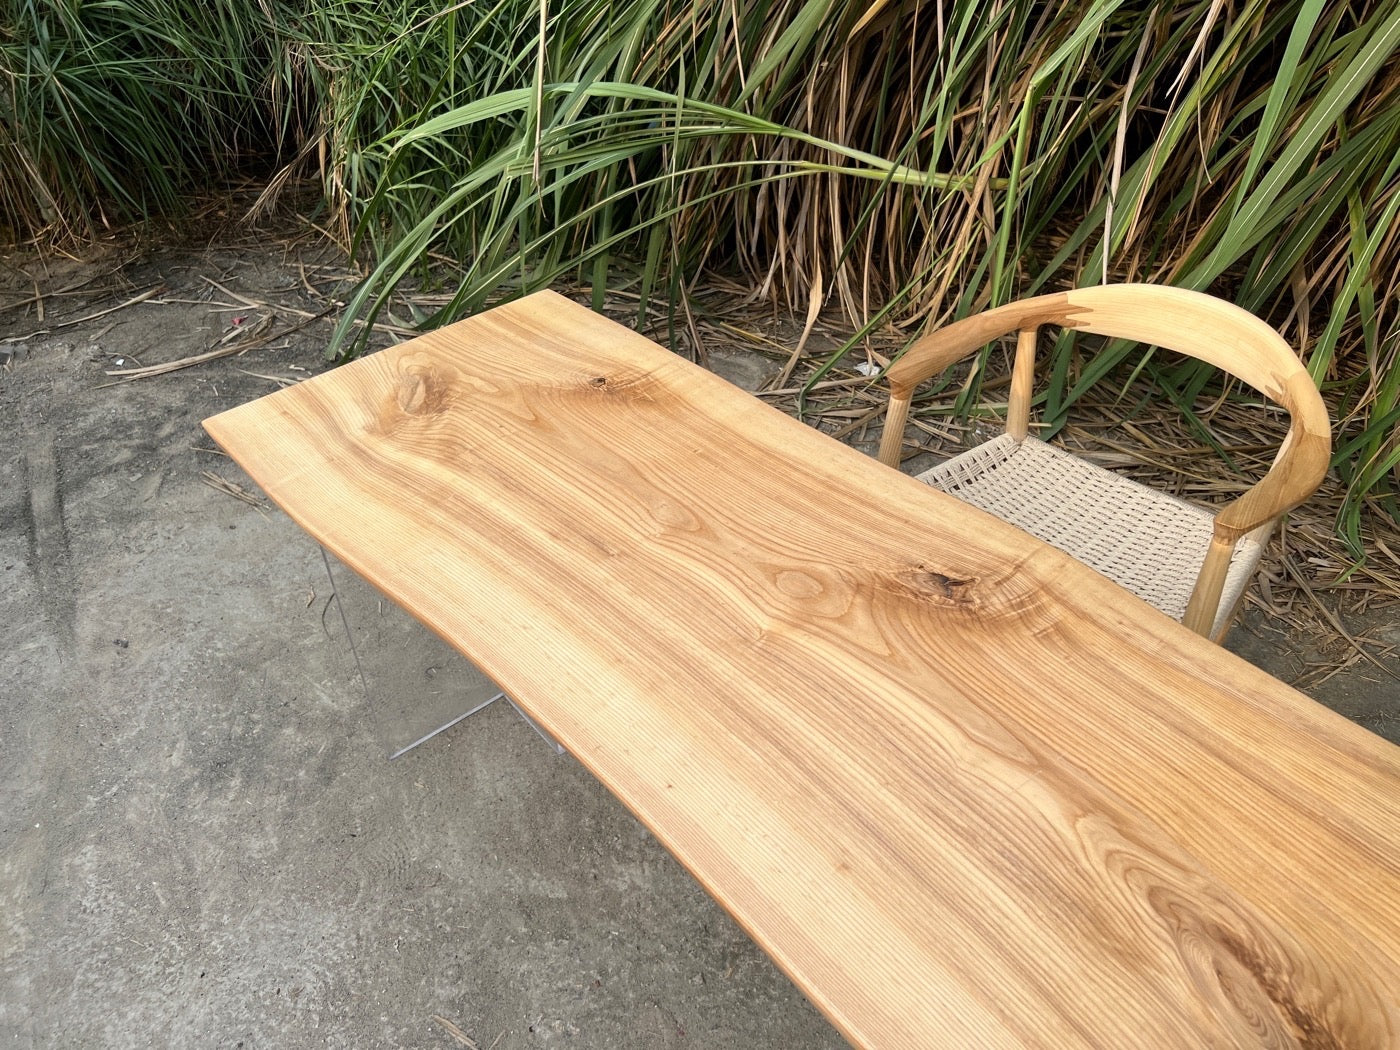 حافة الطاولة المستديرة ذات الحافة الحية، طاولة الحافة الحية من خشب أمريكا الشمالية، طاولة القهوة المصنوعة من خشب الرماد